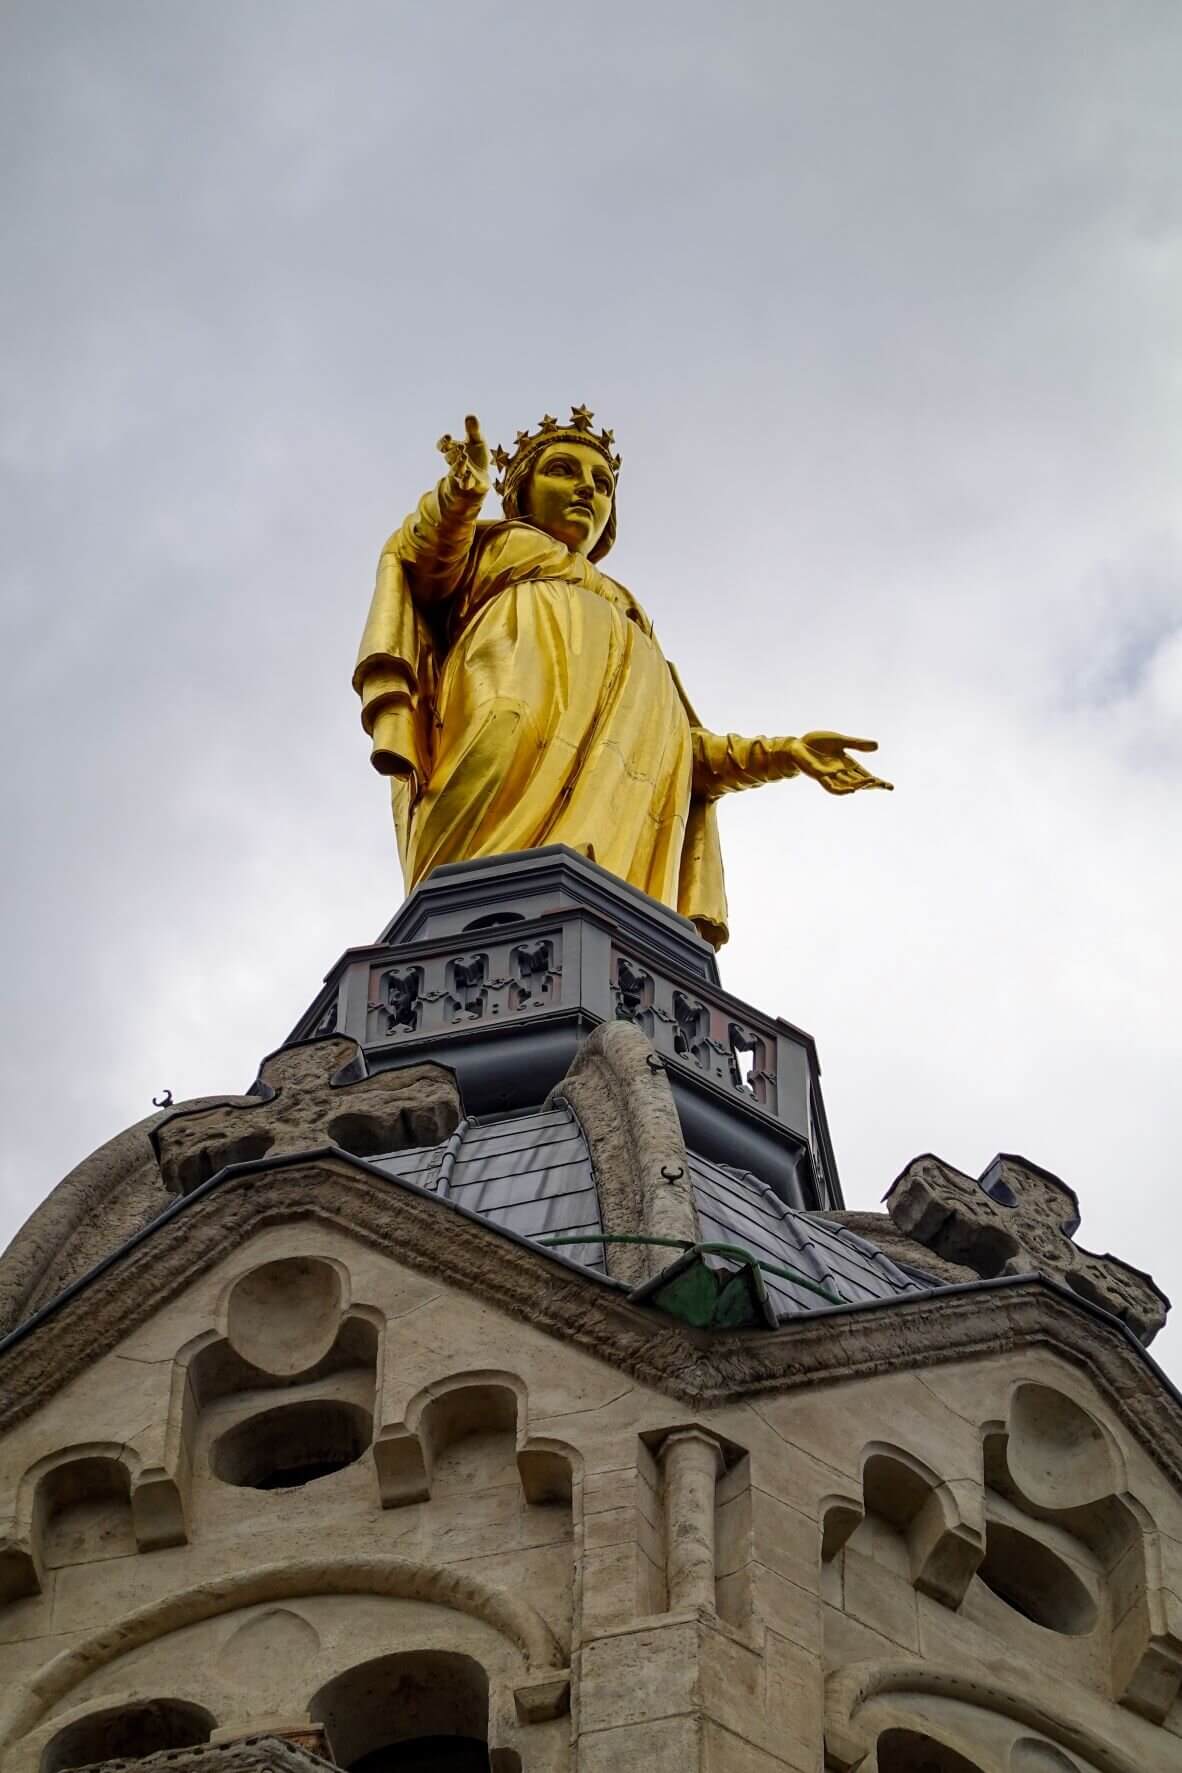 Le diocèse de Lyon veut doter les églises de caméras, barreaux et balises antiterroristes